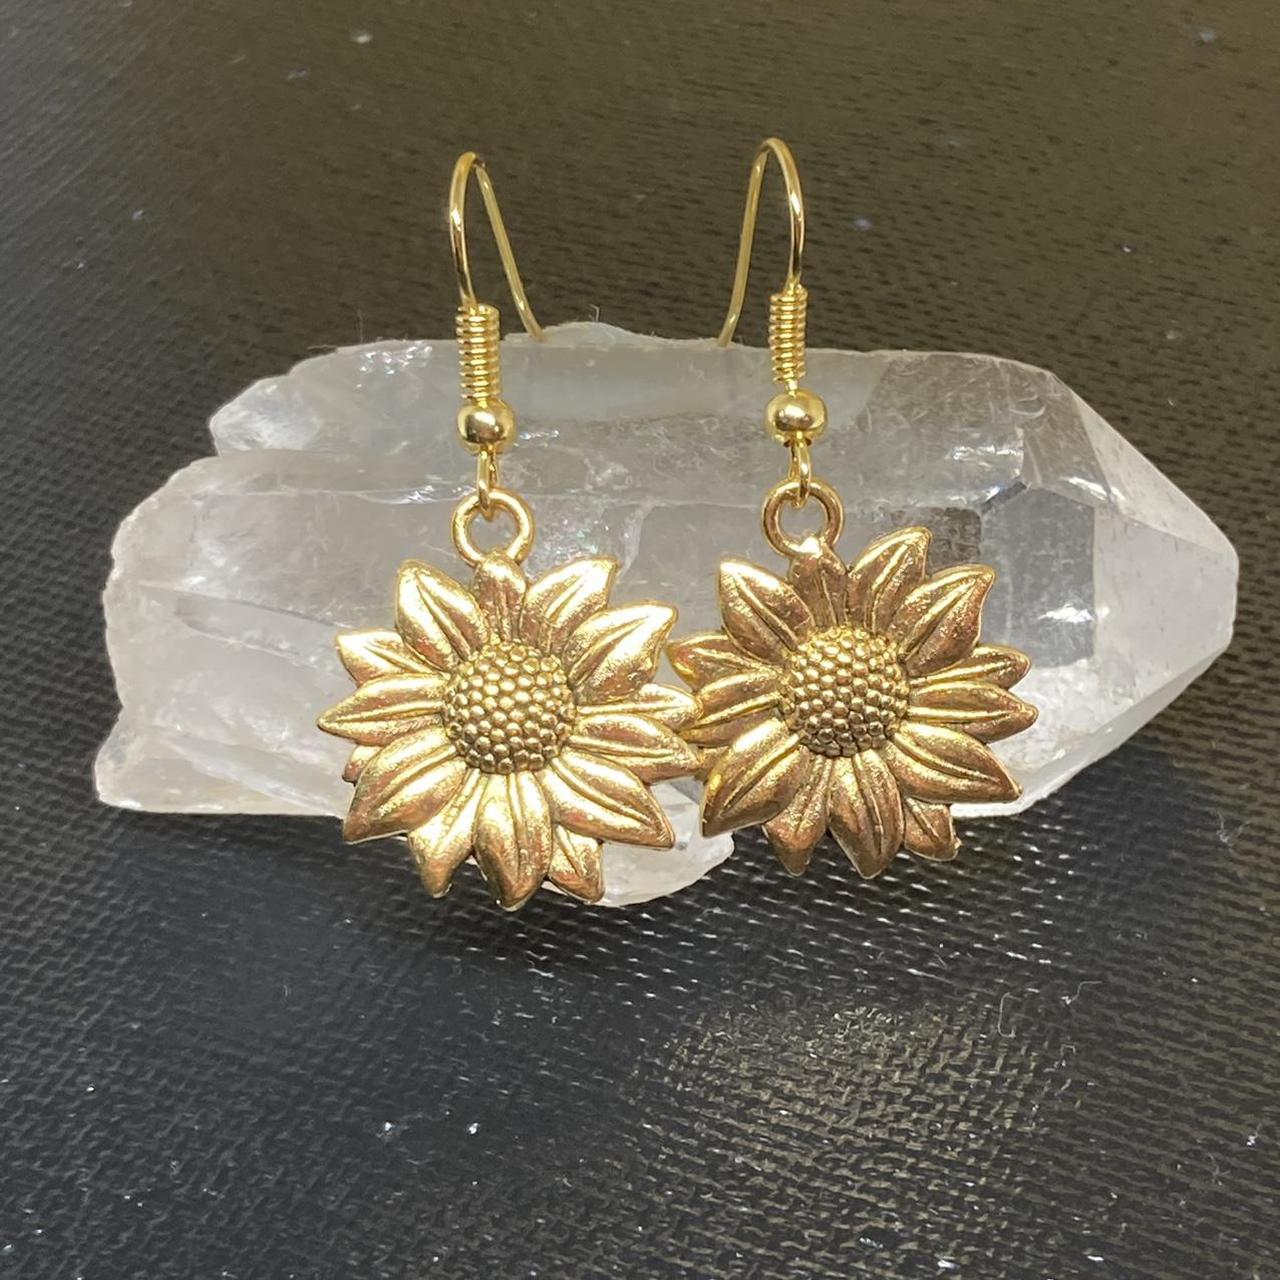 Product Image 2 - Golden sunflower dangle earrings!🌻🔥

☀️$8☀️ +